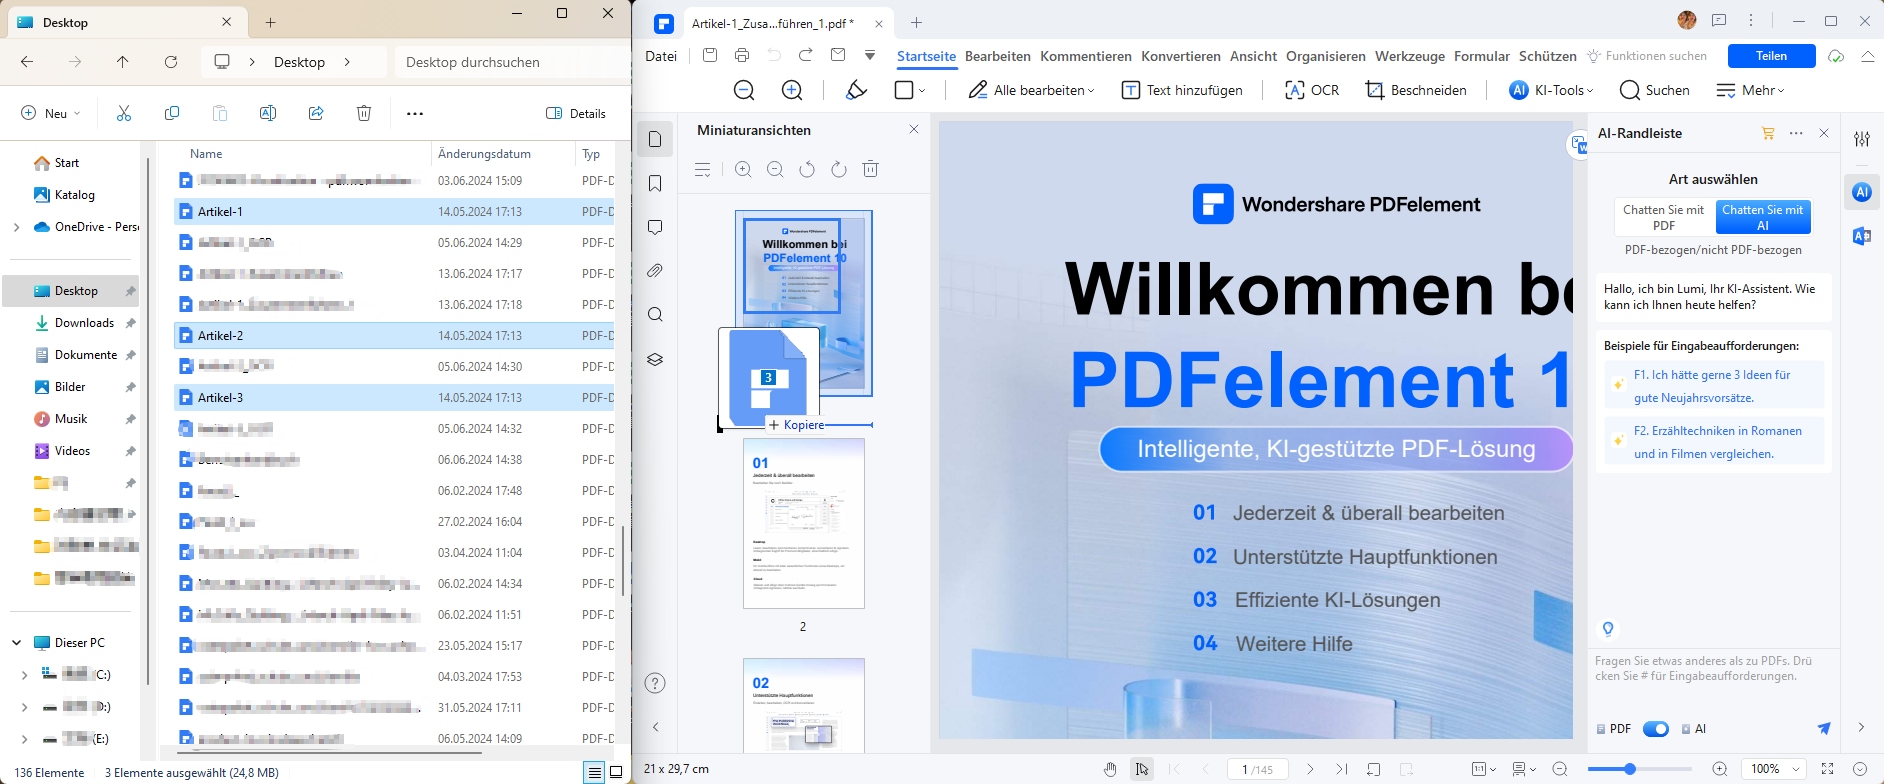 Laden Sie im Popup-Kombinationsfenster alle PDF-Dateien, die Sie zusammenführen möchten, indem Sie auf die Schaltfläche "Dateien hinzufügen" klicken. Sobald Sie auf "Weiter" klicken, werden alle PDF-Dateien zusammengefügt. Sie können den Vorgang jederzeit nach Bedarf abbrechen.